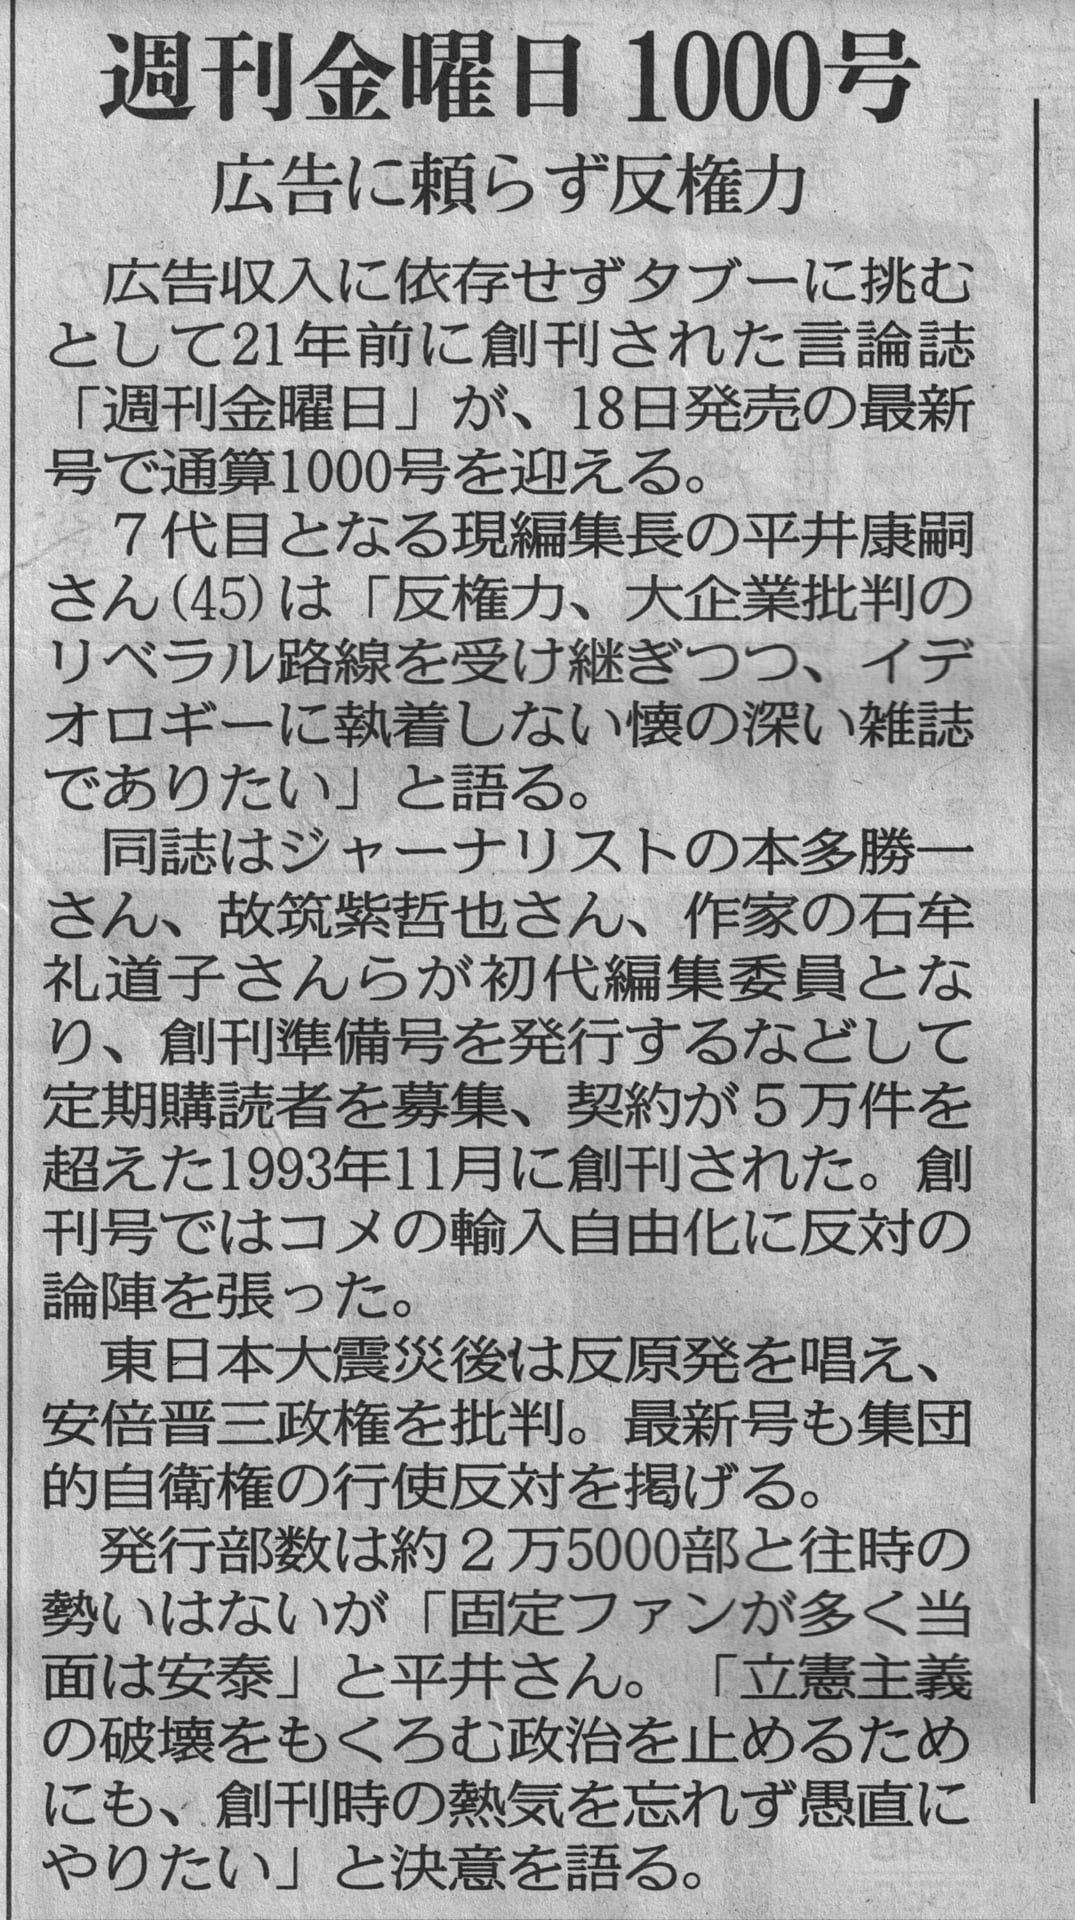 週刊金曜日1000号東京新聞記事